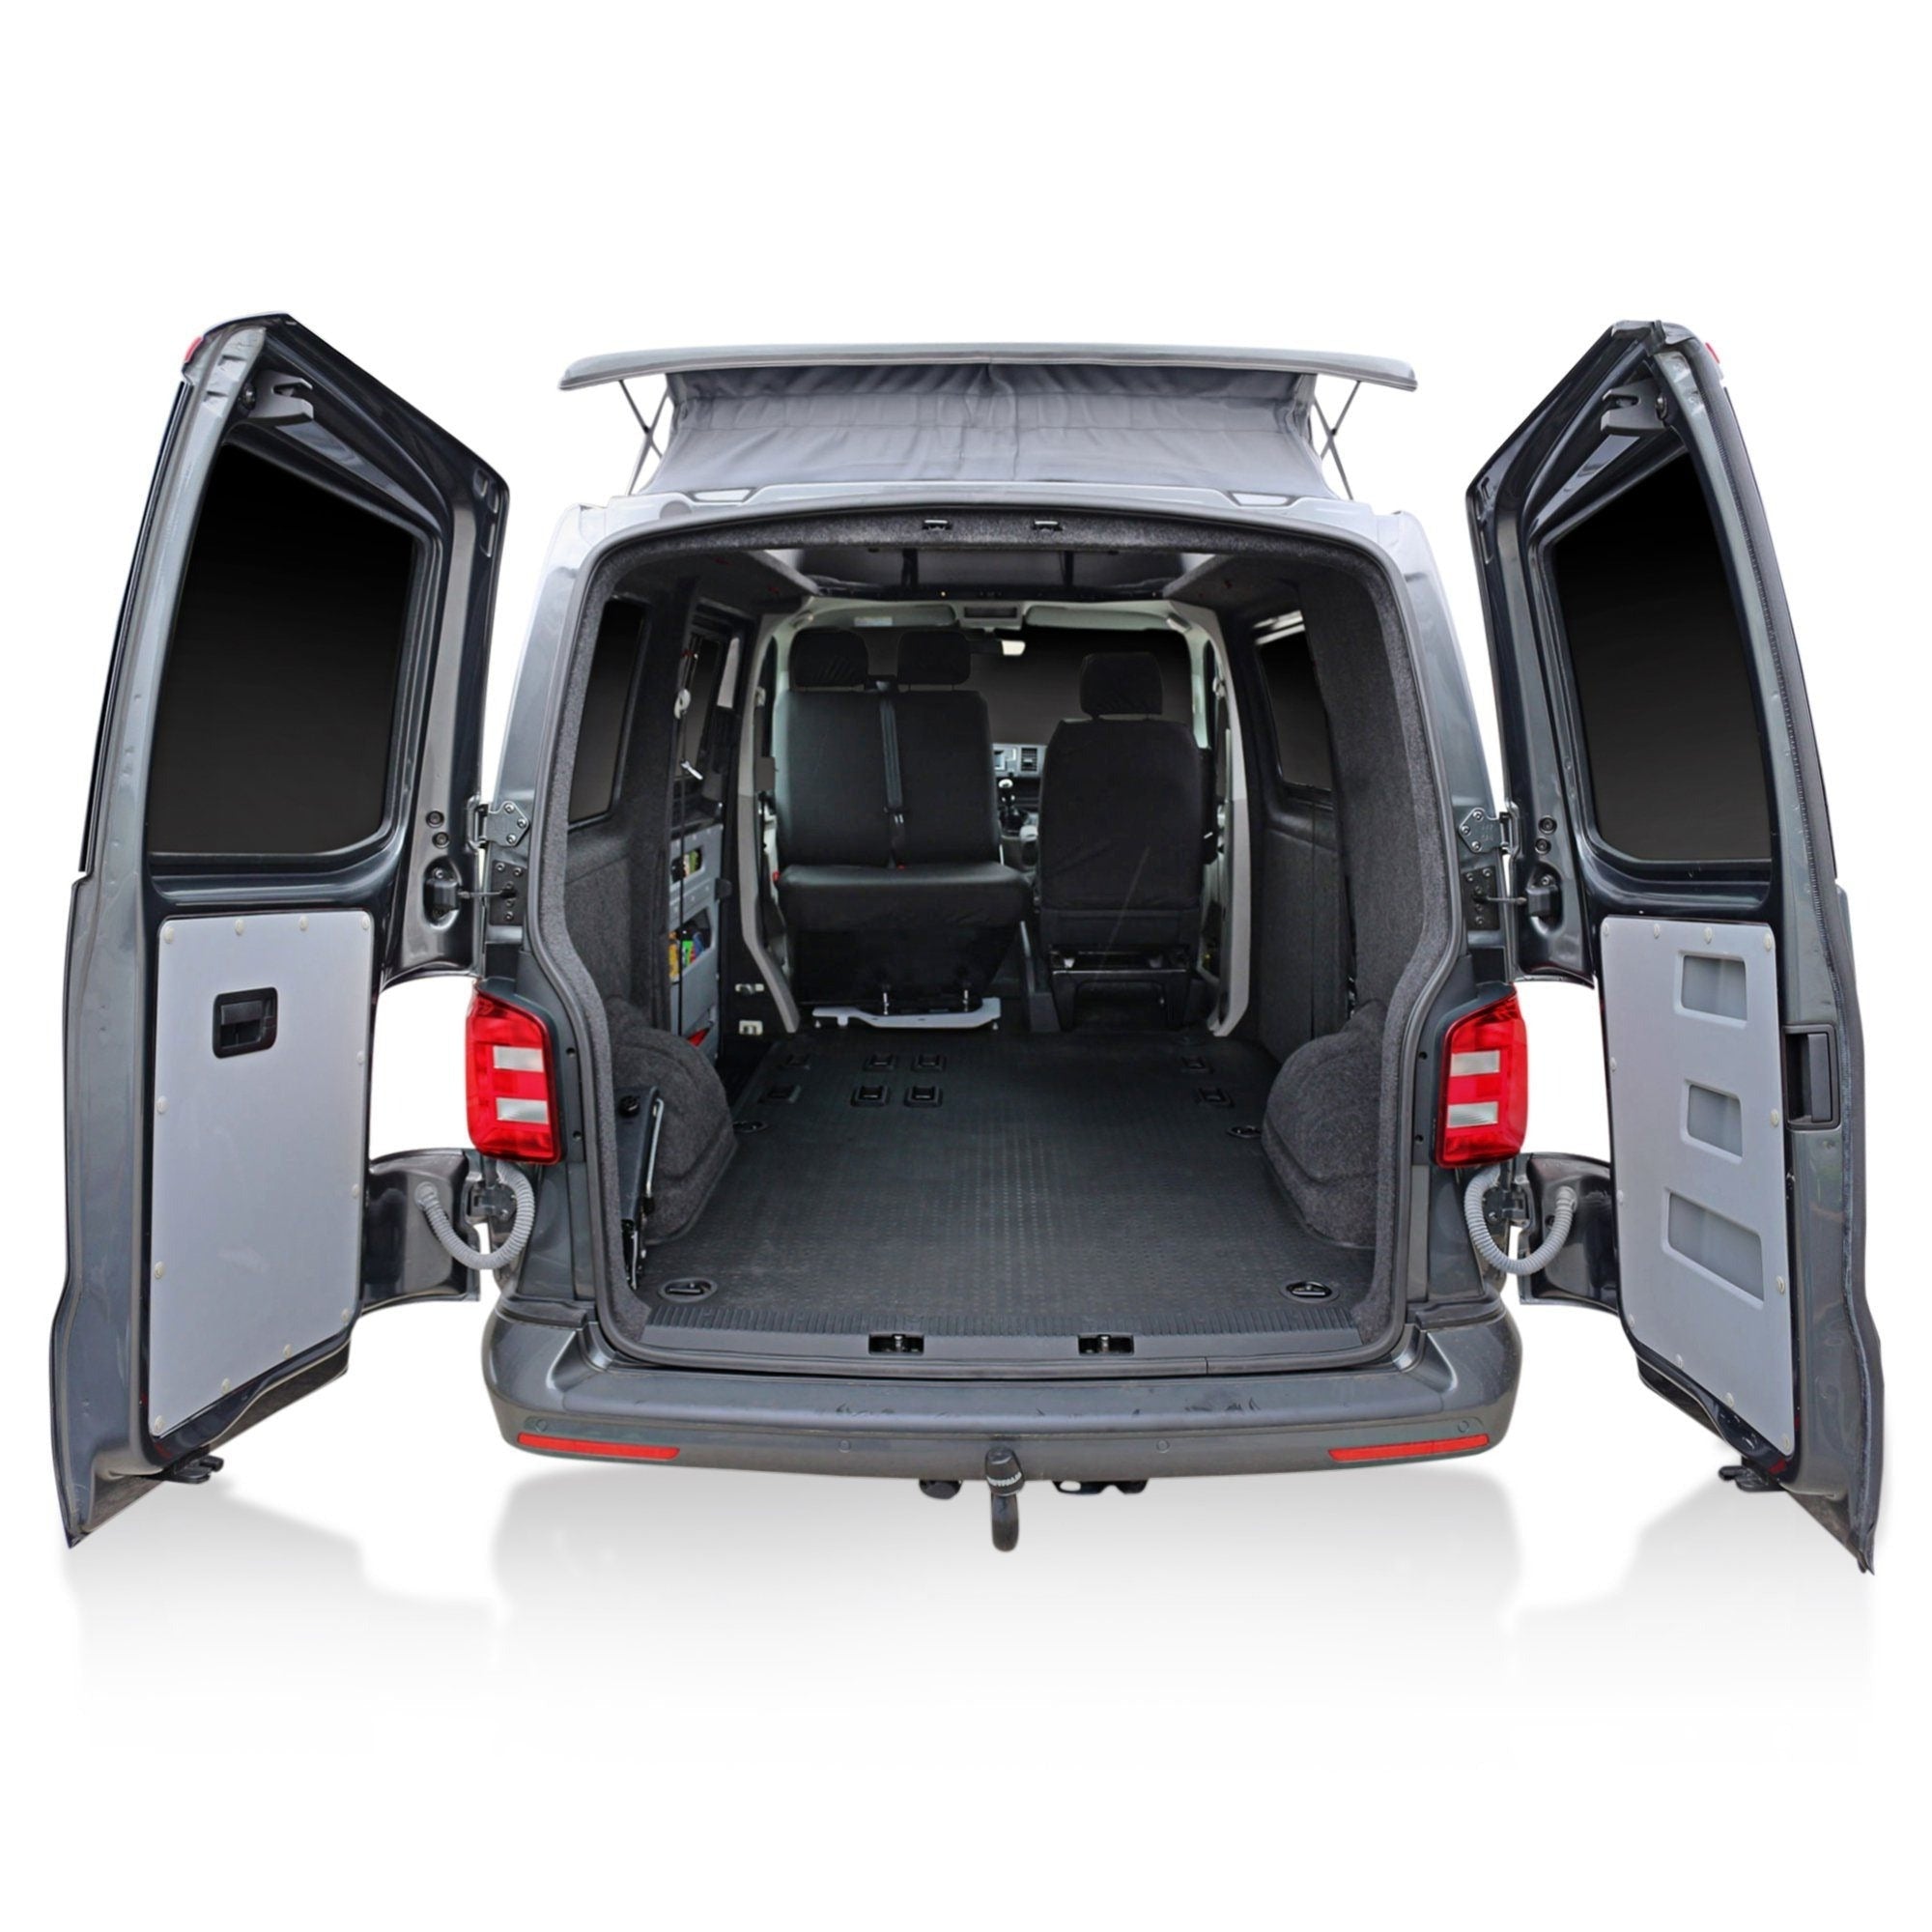 Kiravans VW T4 DoorStore - Schaffen Sie zusätzlichen Stauraum in Ihren